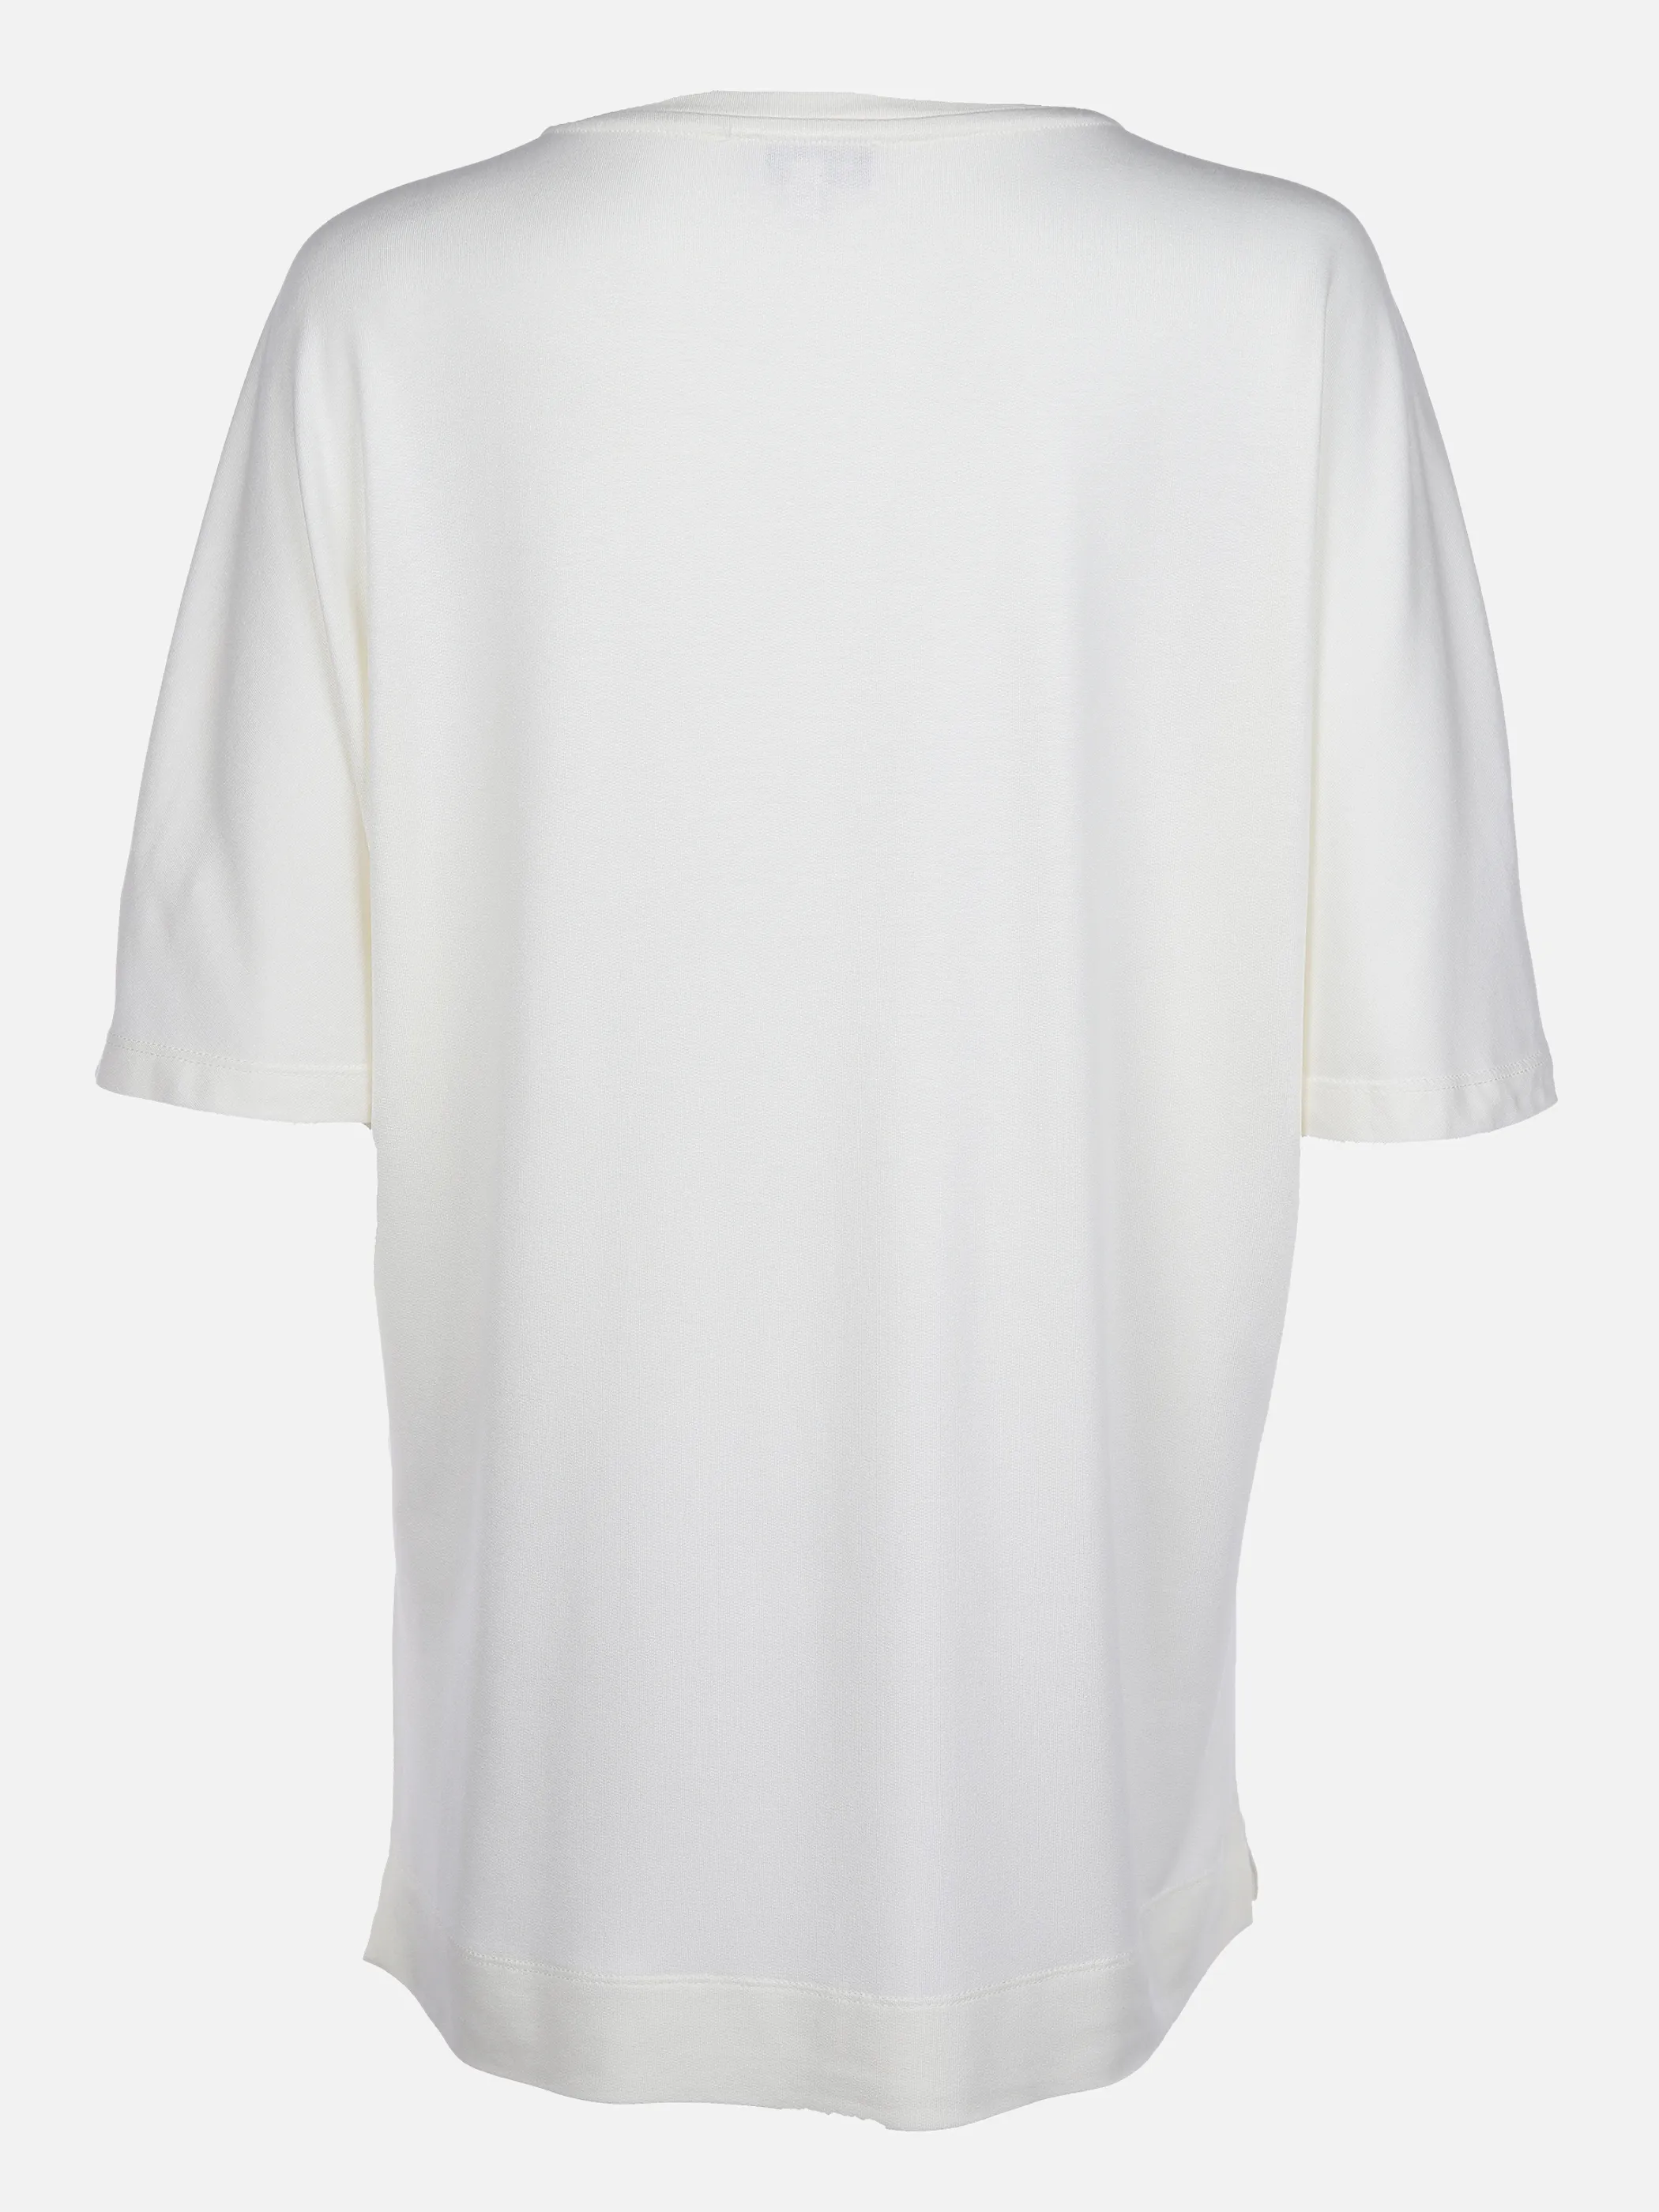 Lisa Tossa Da-T-Shirt m. V-Ausschnitt Weiß 866116 OFFWHITE 2